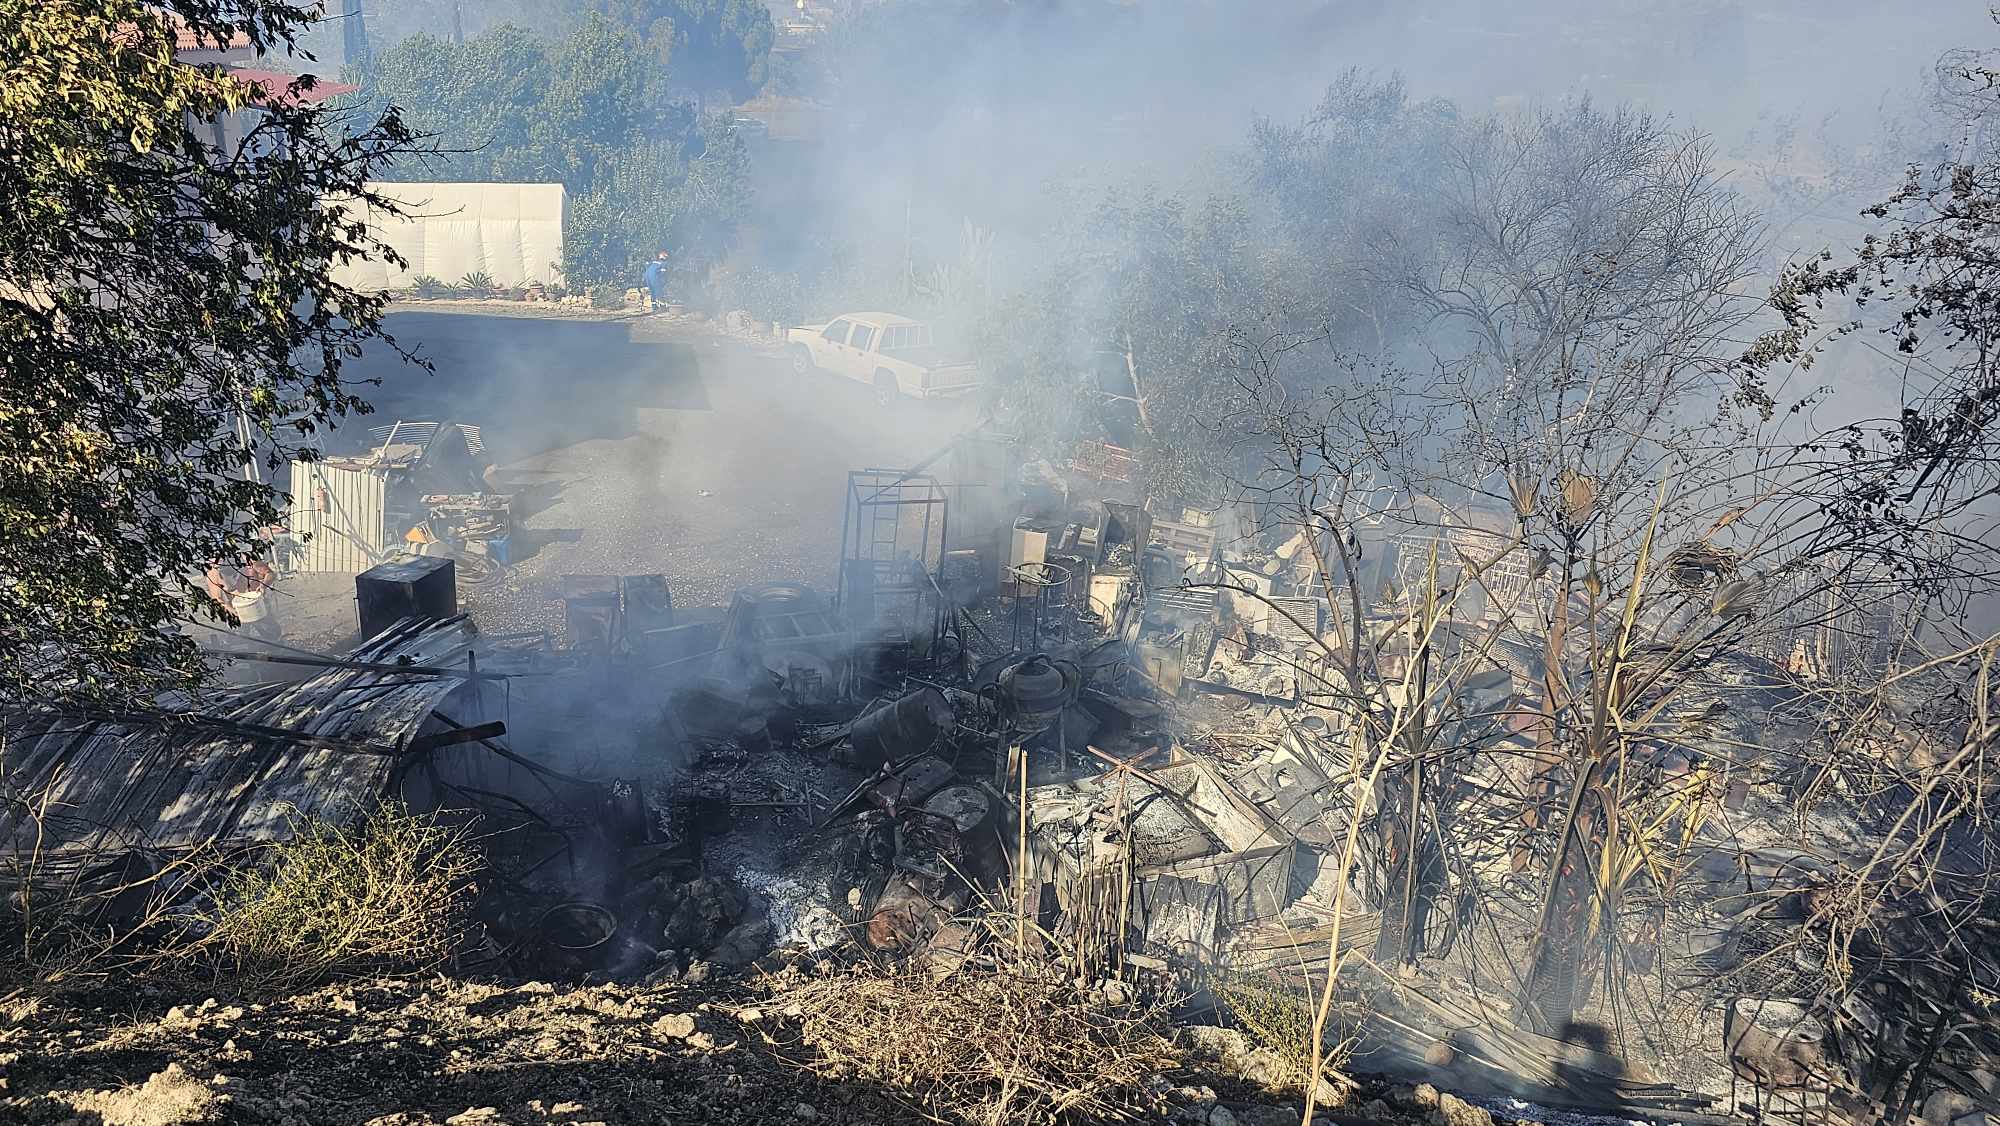 Πυροσβεστική Υπηρεσία: Δύσκολη κατάσταση στην πυρκαγιά στο Ψάθι